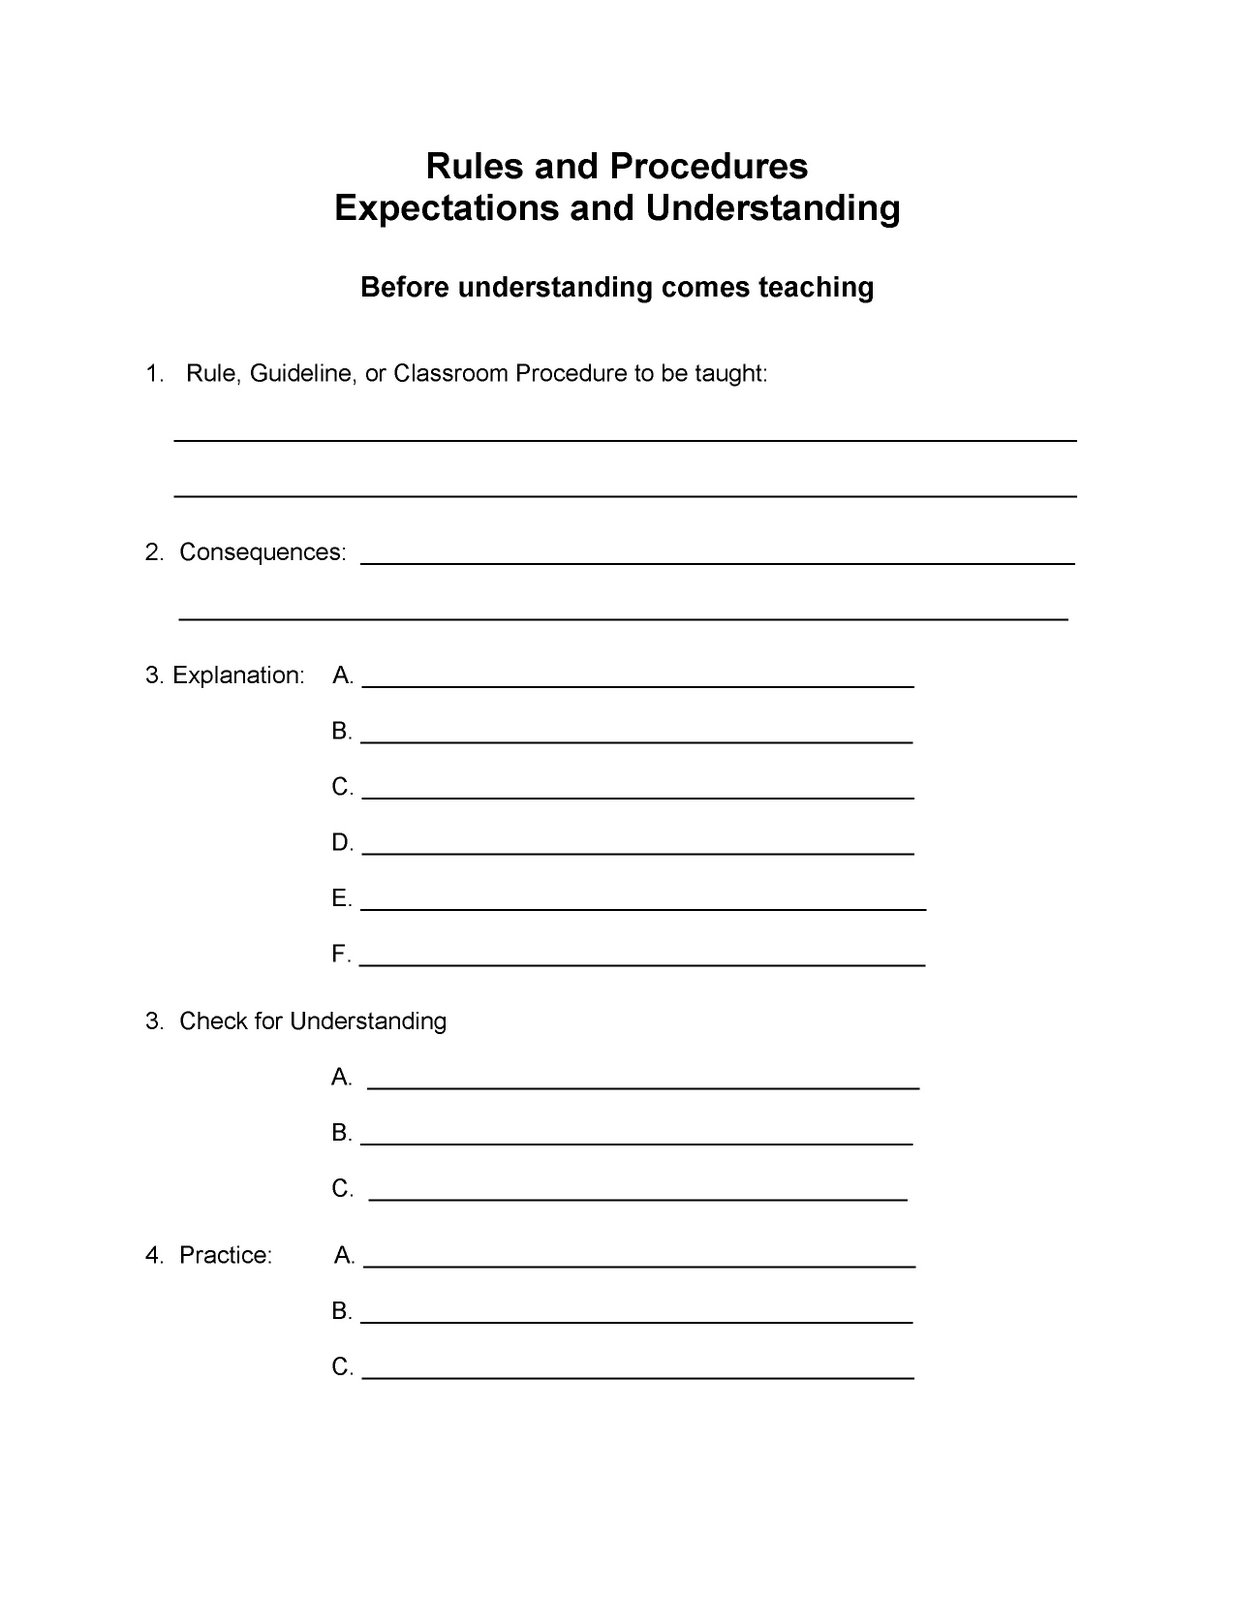 [Rule+and+Procedures+Teacher+Worksheet.jpg]